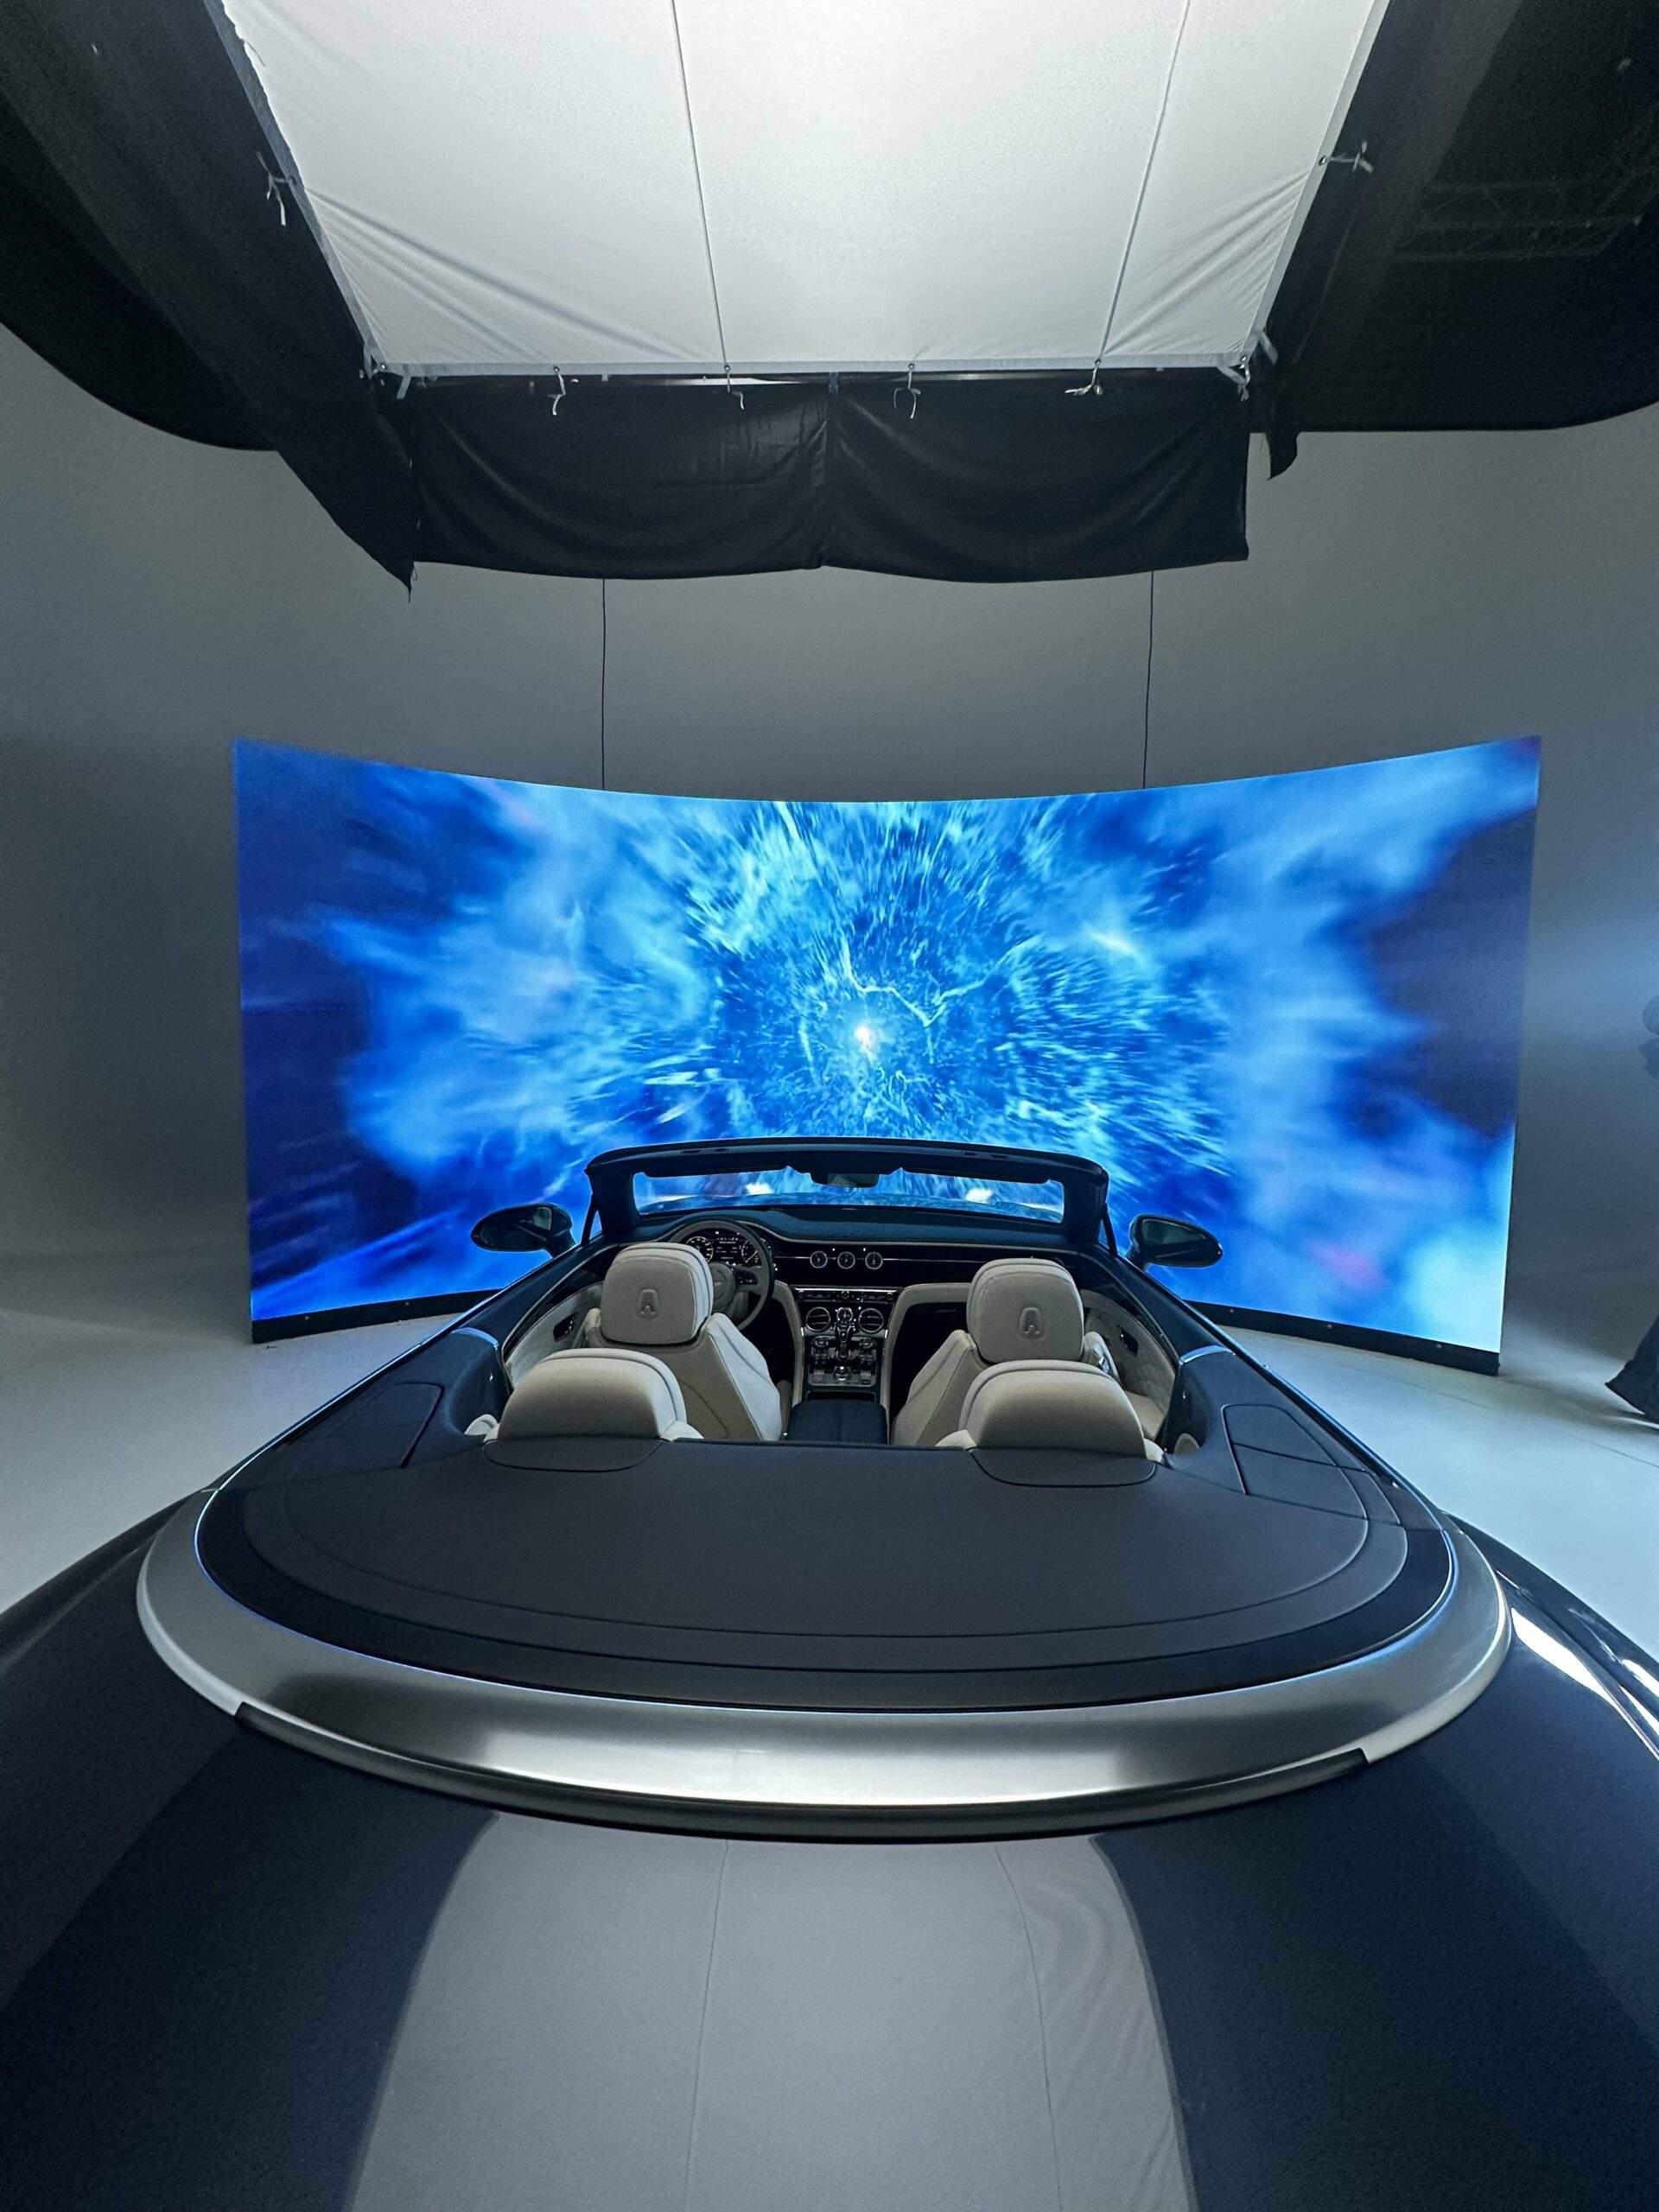 Studio XR : La révolution de la réalité virtuelle